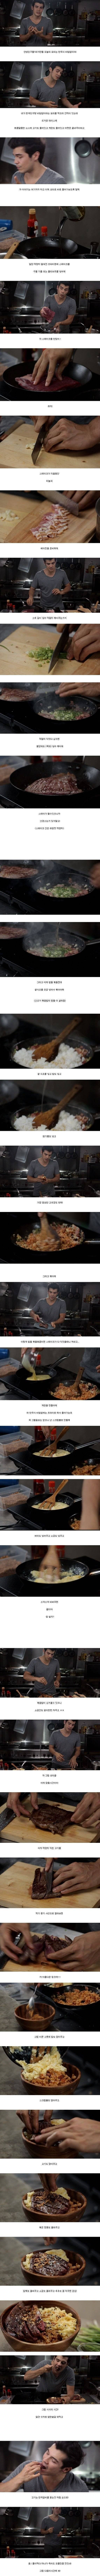 비빔밥 만들어 먹는 외국인